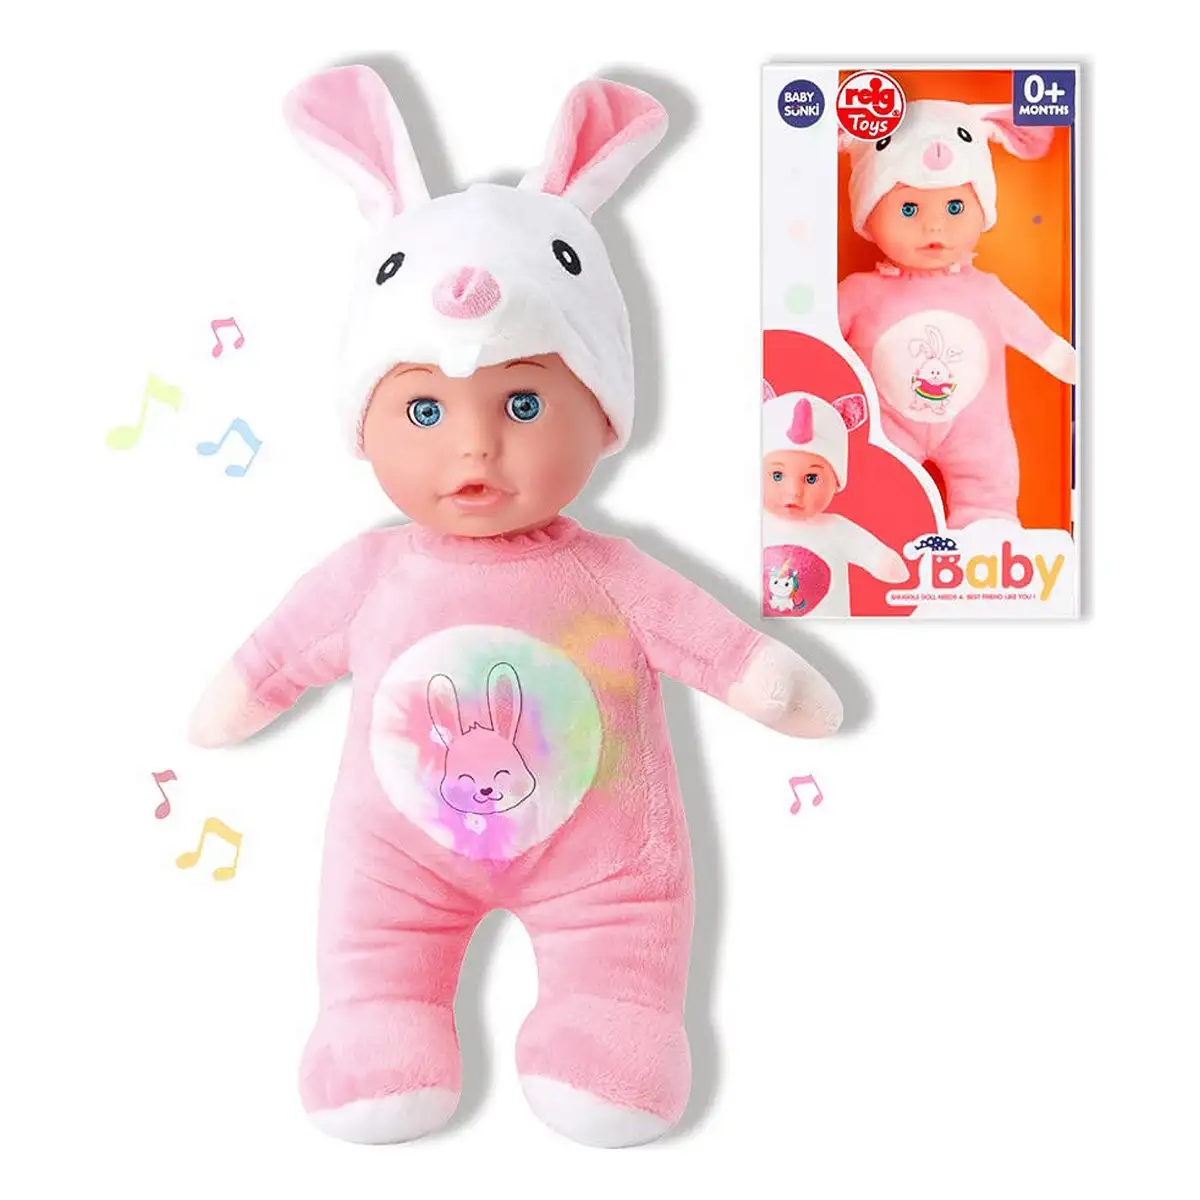 Poupe e reig pink rabbit fluffy toy 30 cm_8138. DIAYTAR SENEGAL - Votre Plaisir Shopping à Portée de Clic. Explorez notre boutique en ligne et trouvez des produits qui ajoutent une touche de bonheur à votre vie quotidienne.